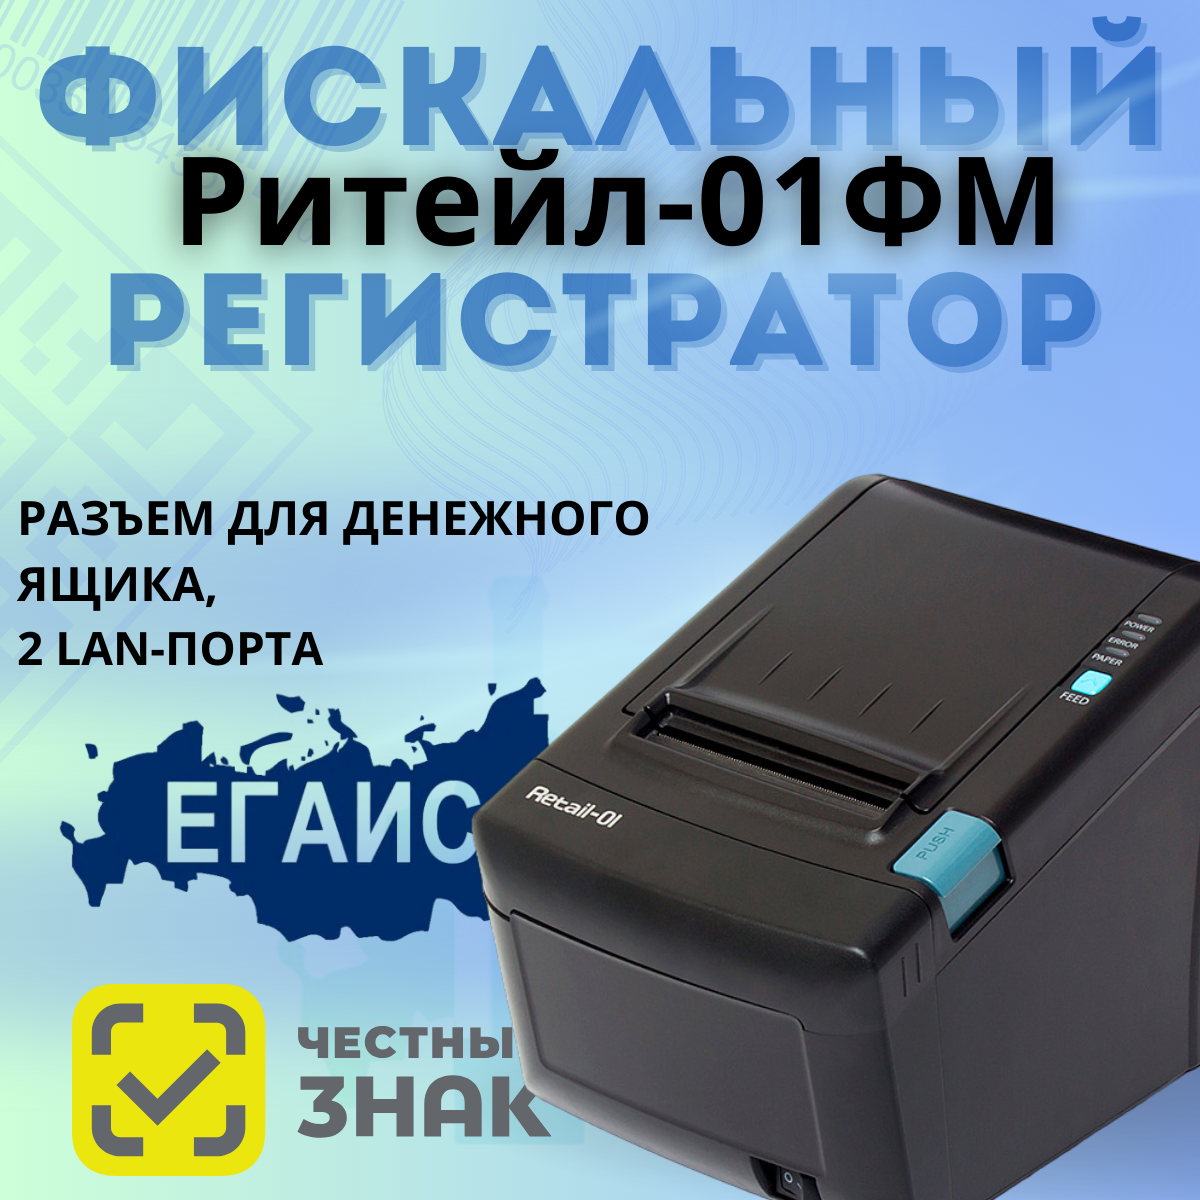 Фискальный регистратор ККТ "РИТЕЙЛ-01ФМ" RS/USB/LAN (черный) без ФН